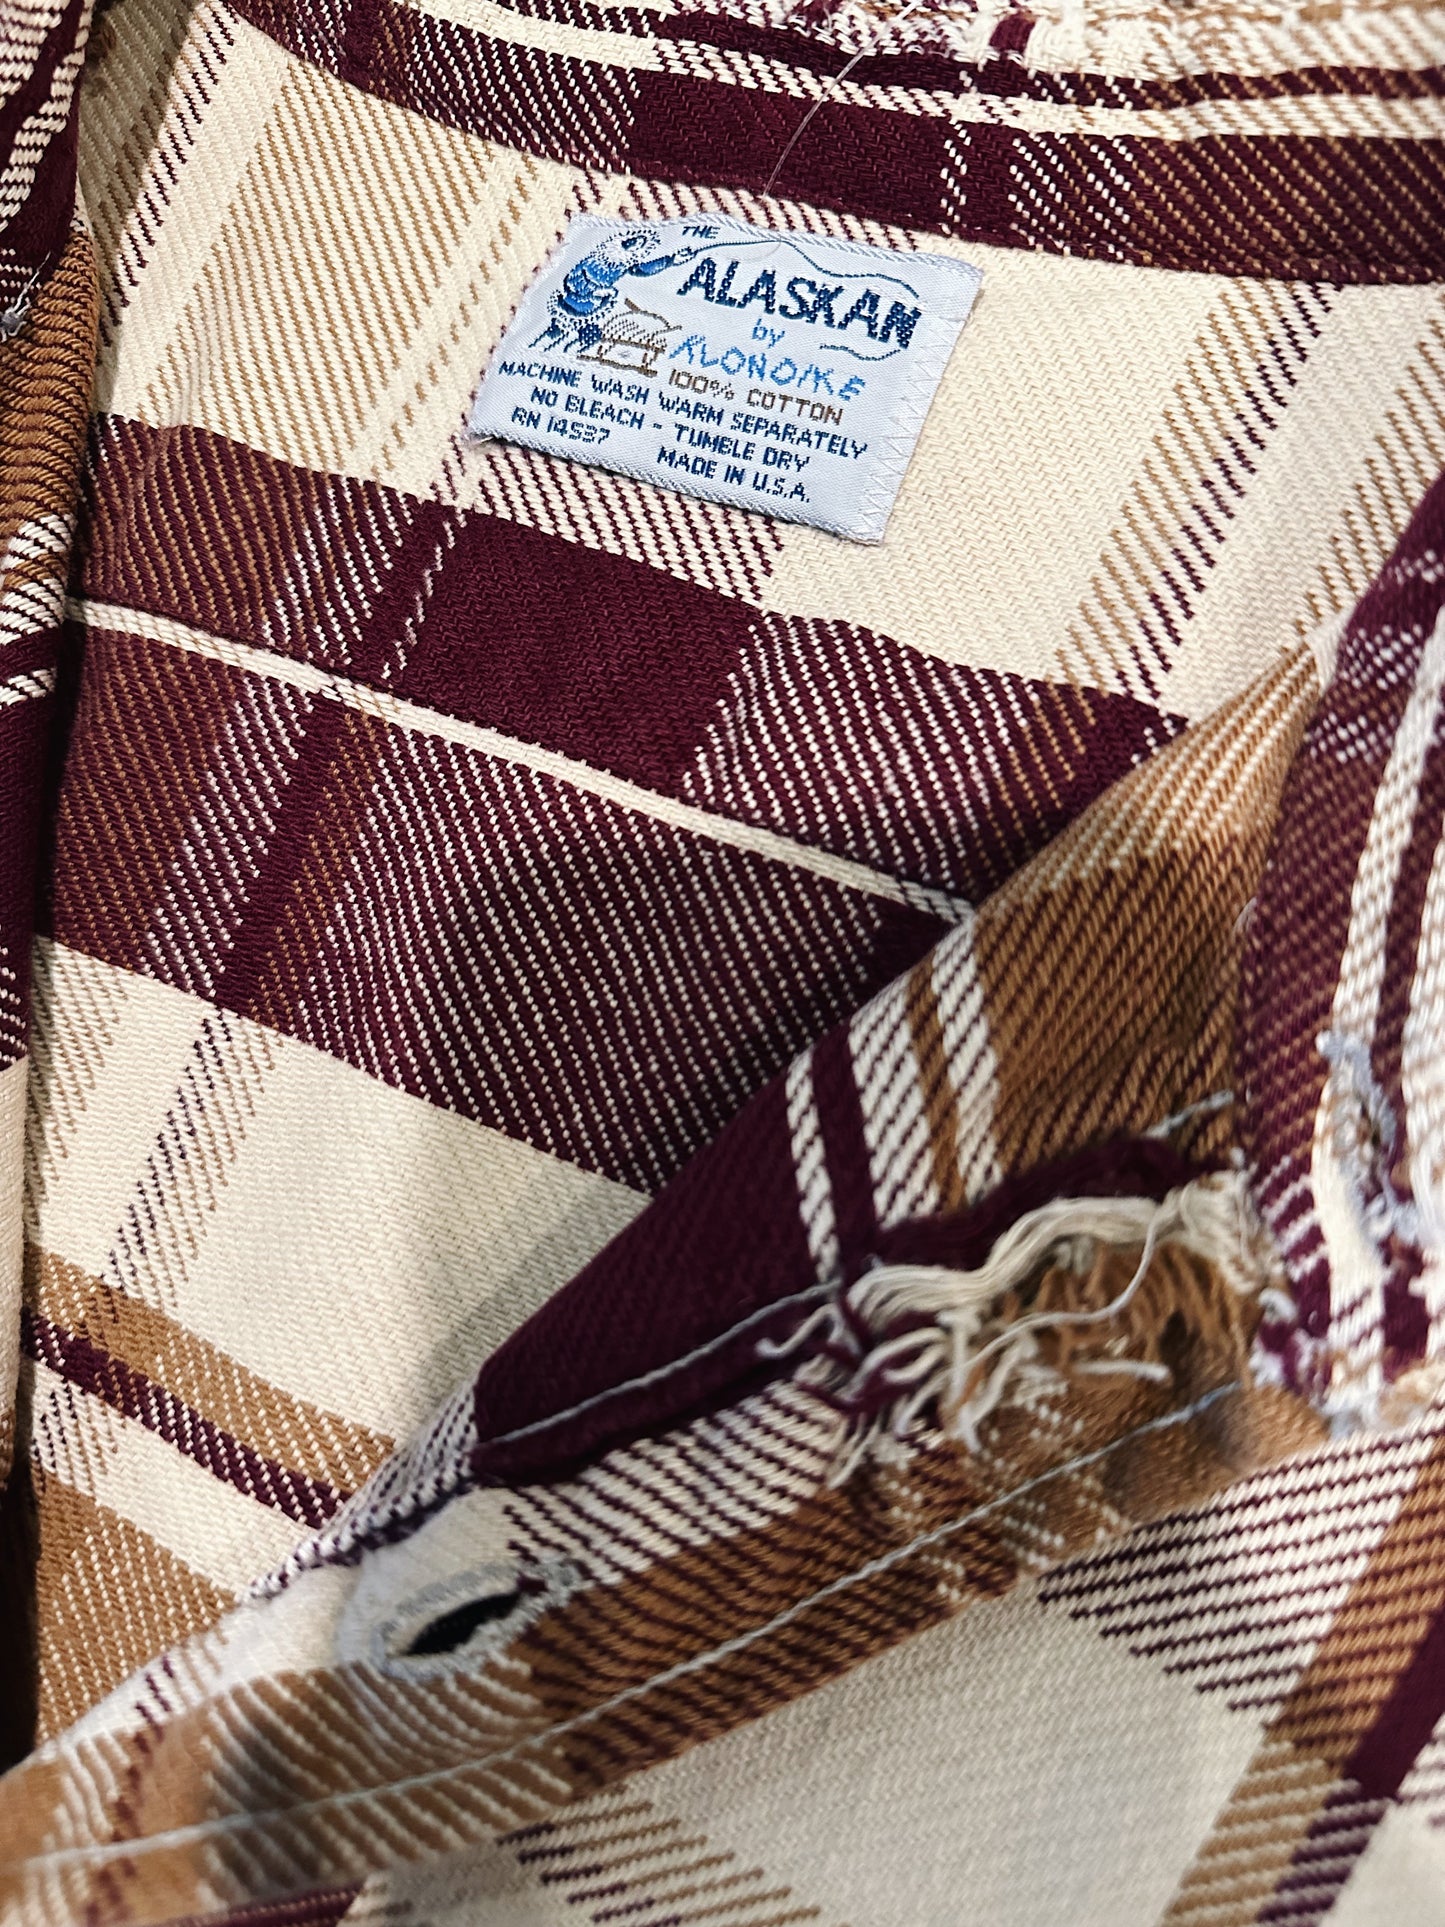 Flannel "The Alaskan" lables details 